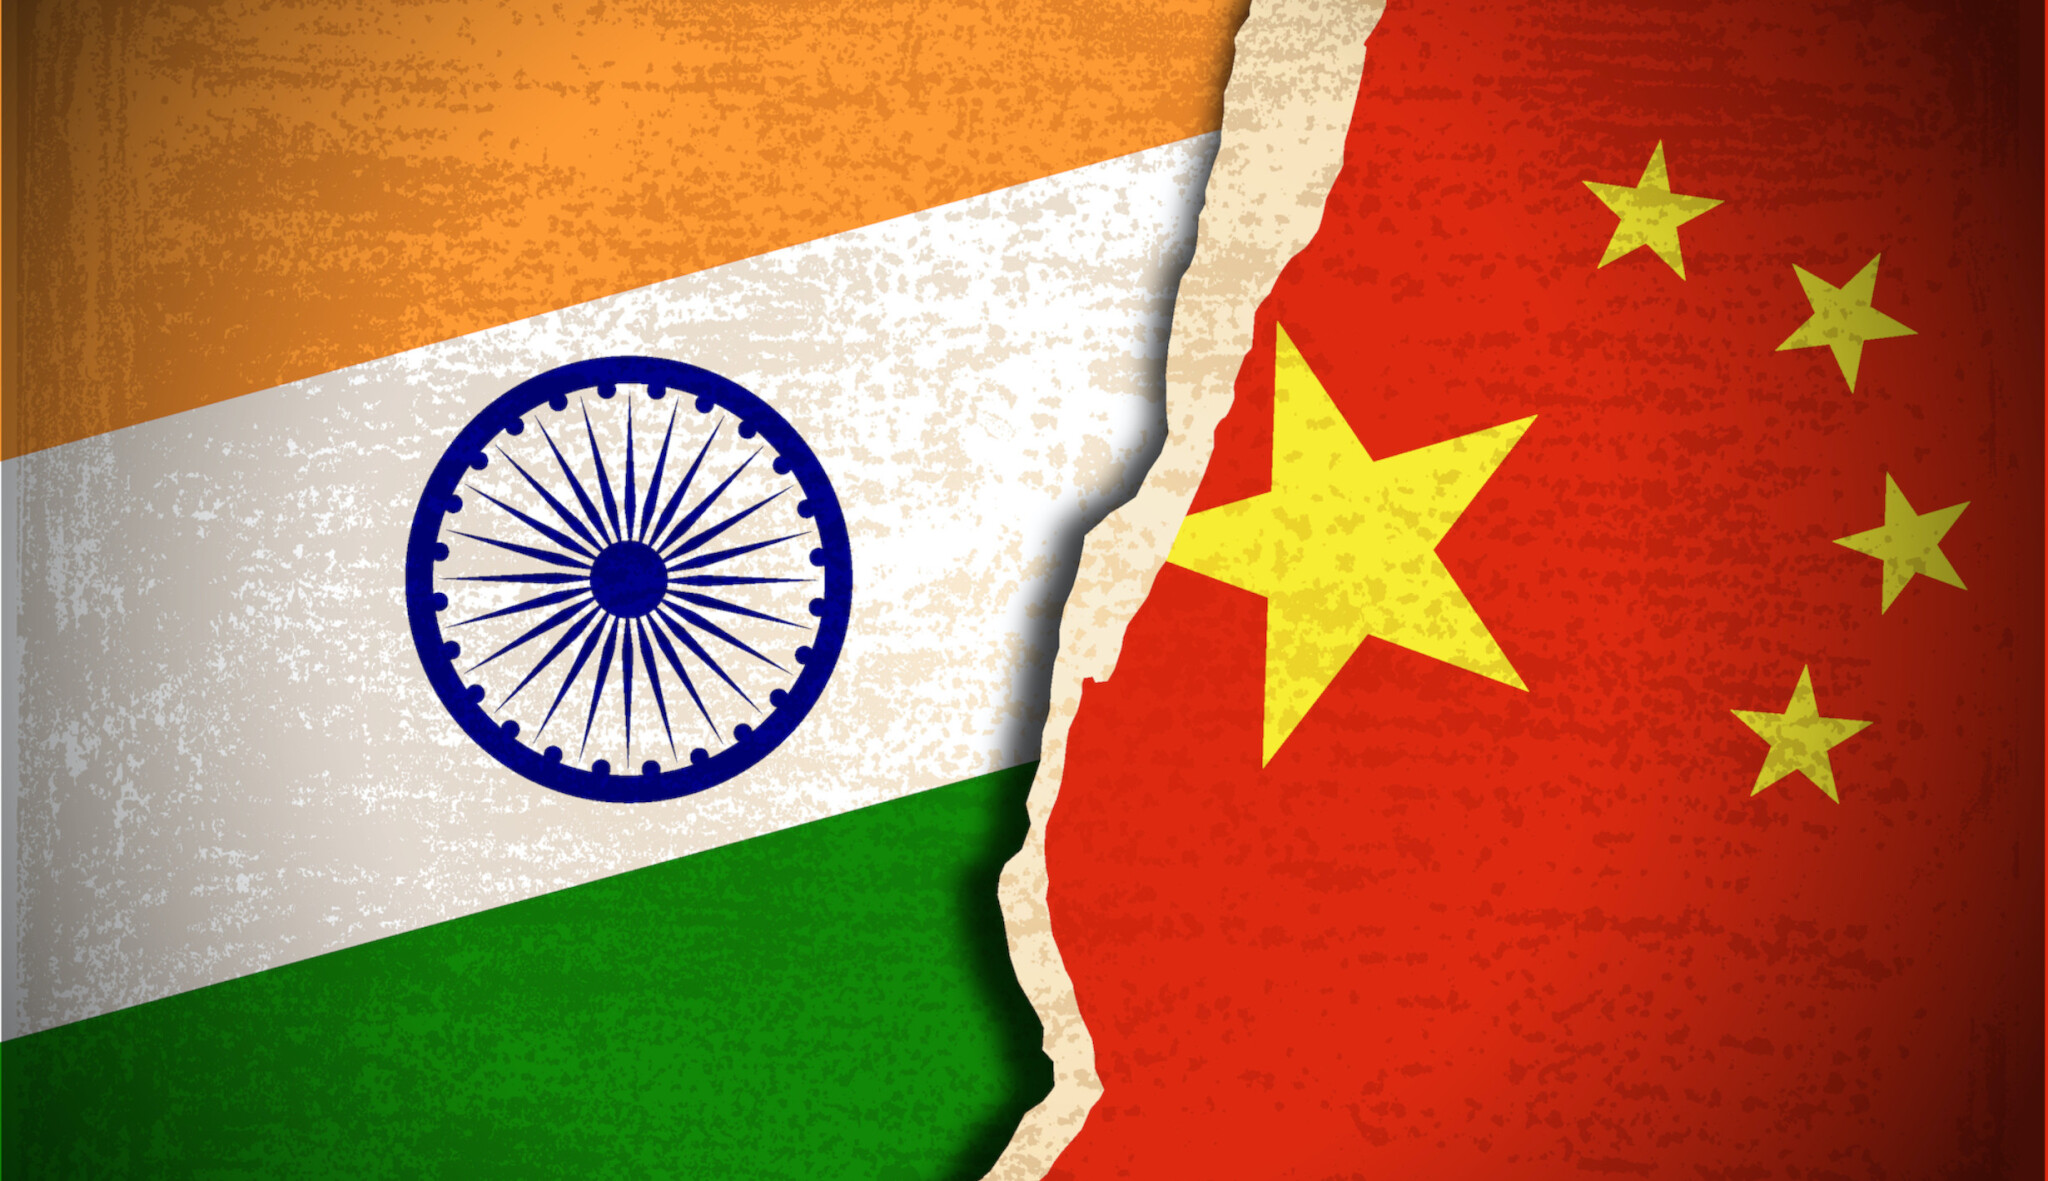 Americká firma nejspíš pomohla Indii špehovat Čínu a Pákistán. A není první ani poslední